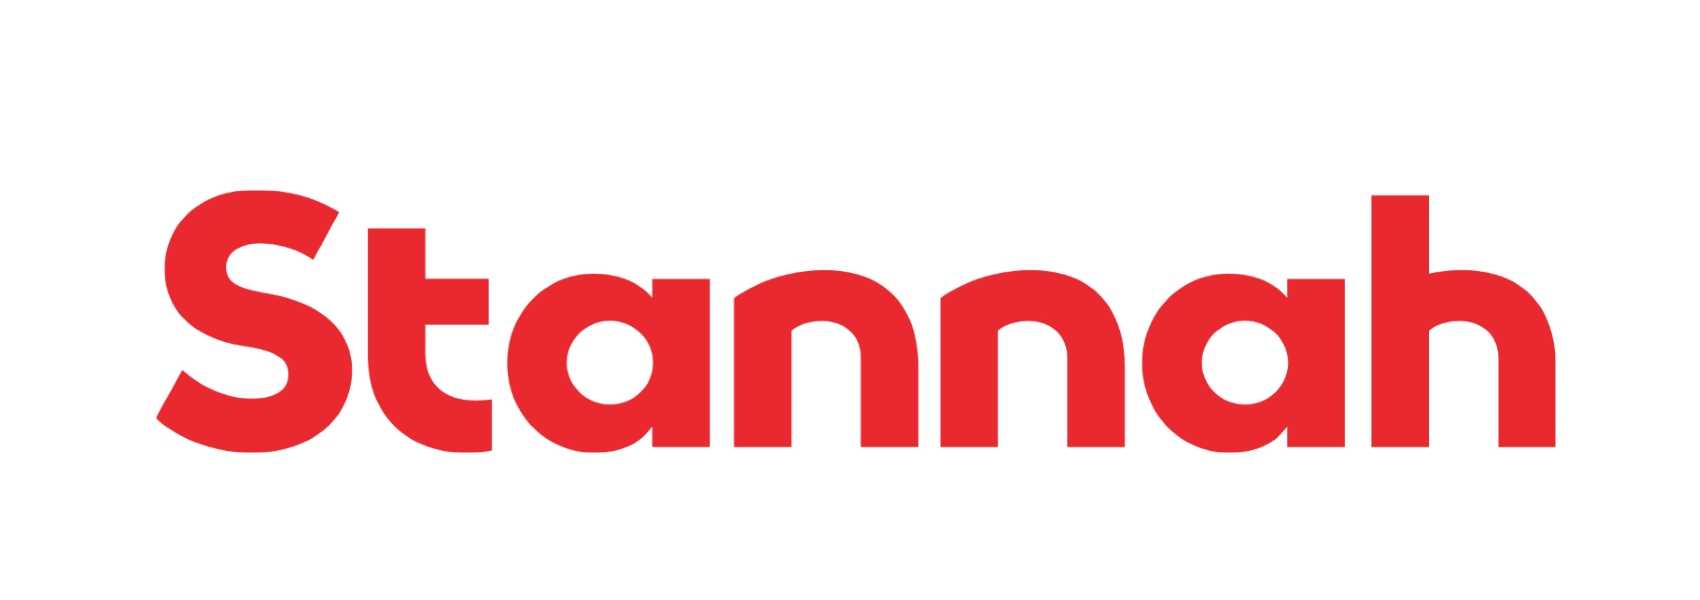 Stannah Logo